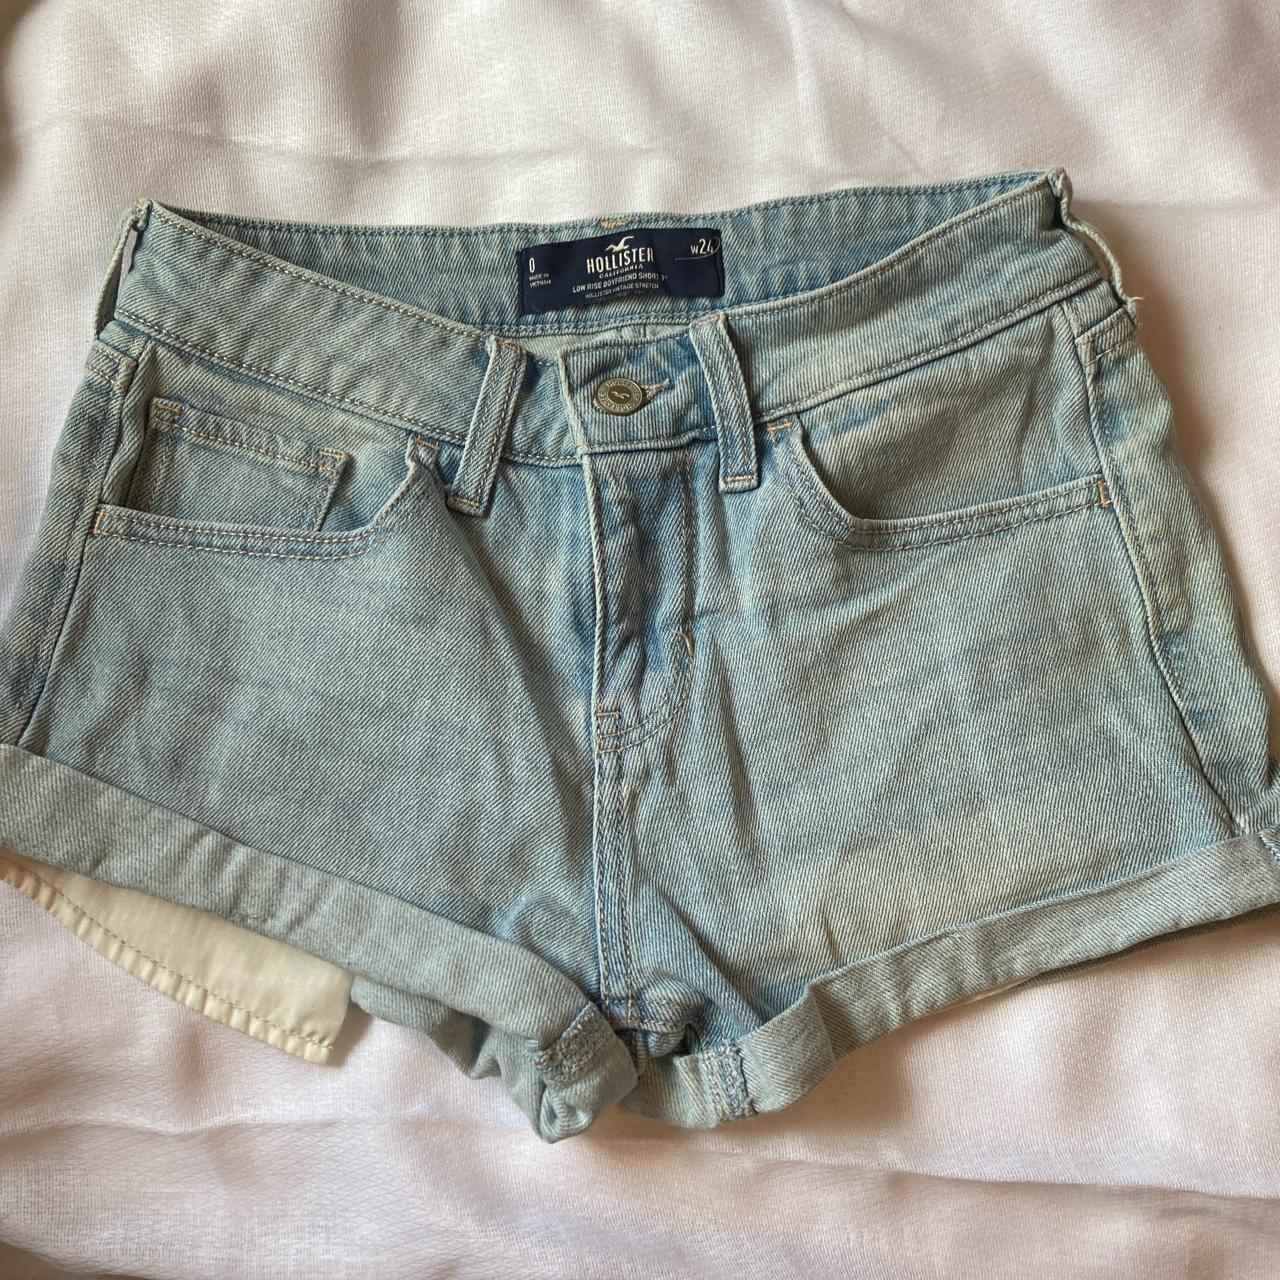 Hollister Low Rise Denim Jeans Short Shorts Womans Size 0 W24